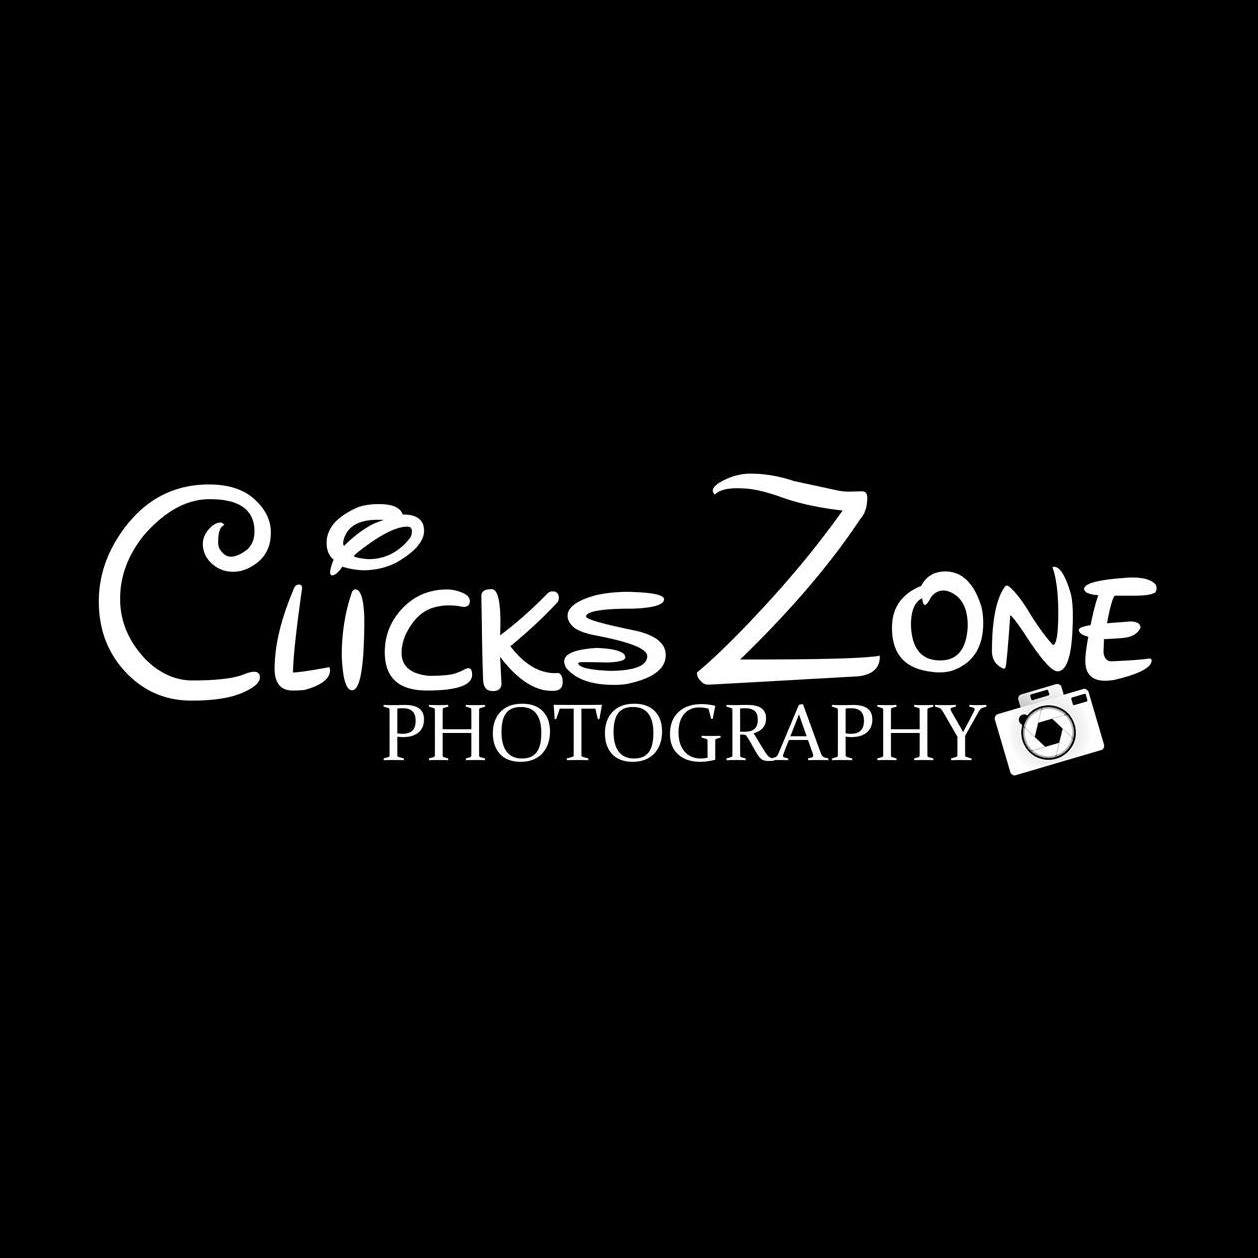 Clicks Zone Photography Logo